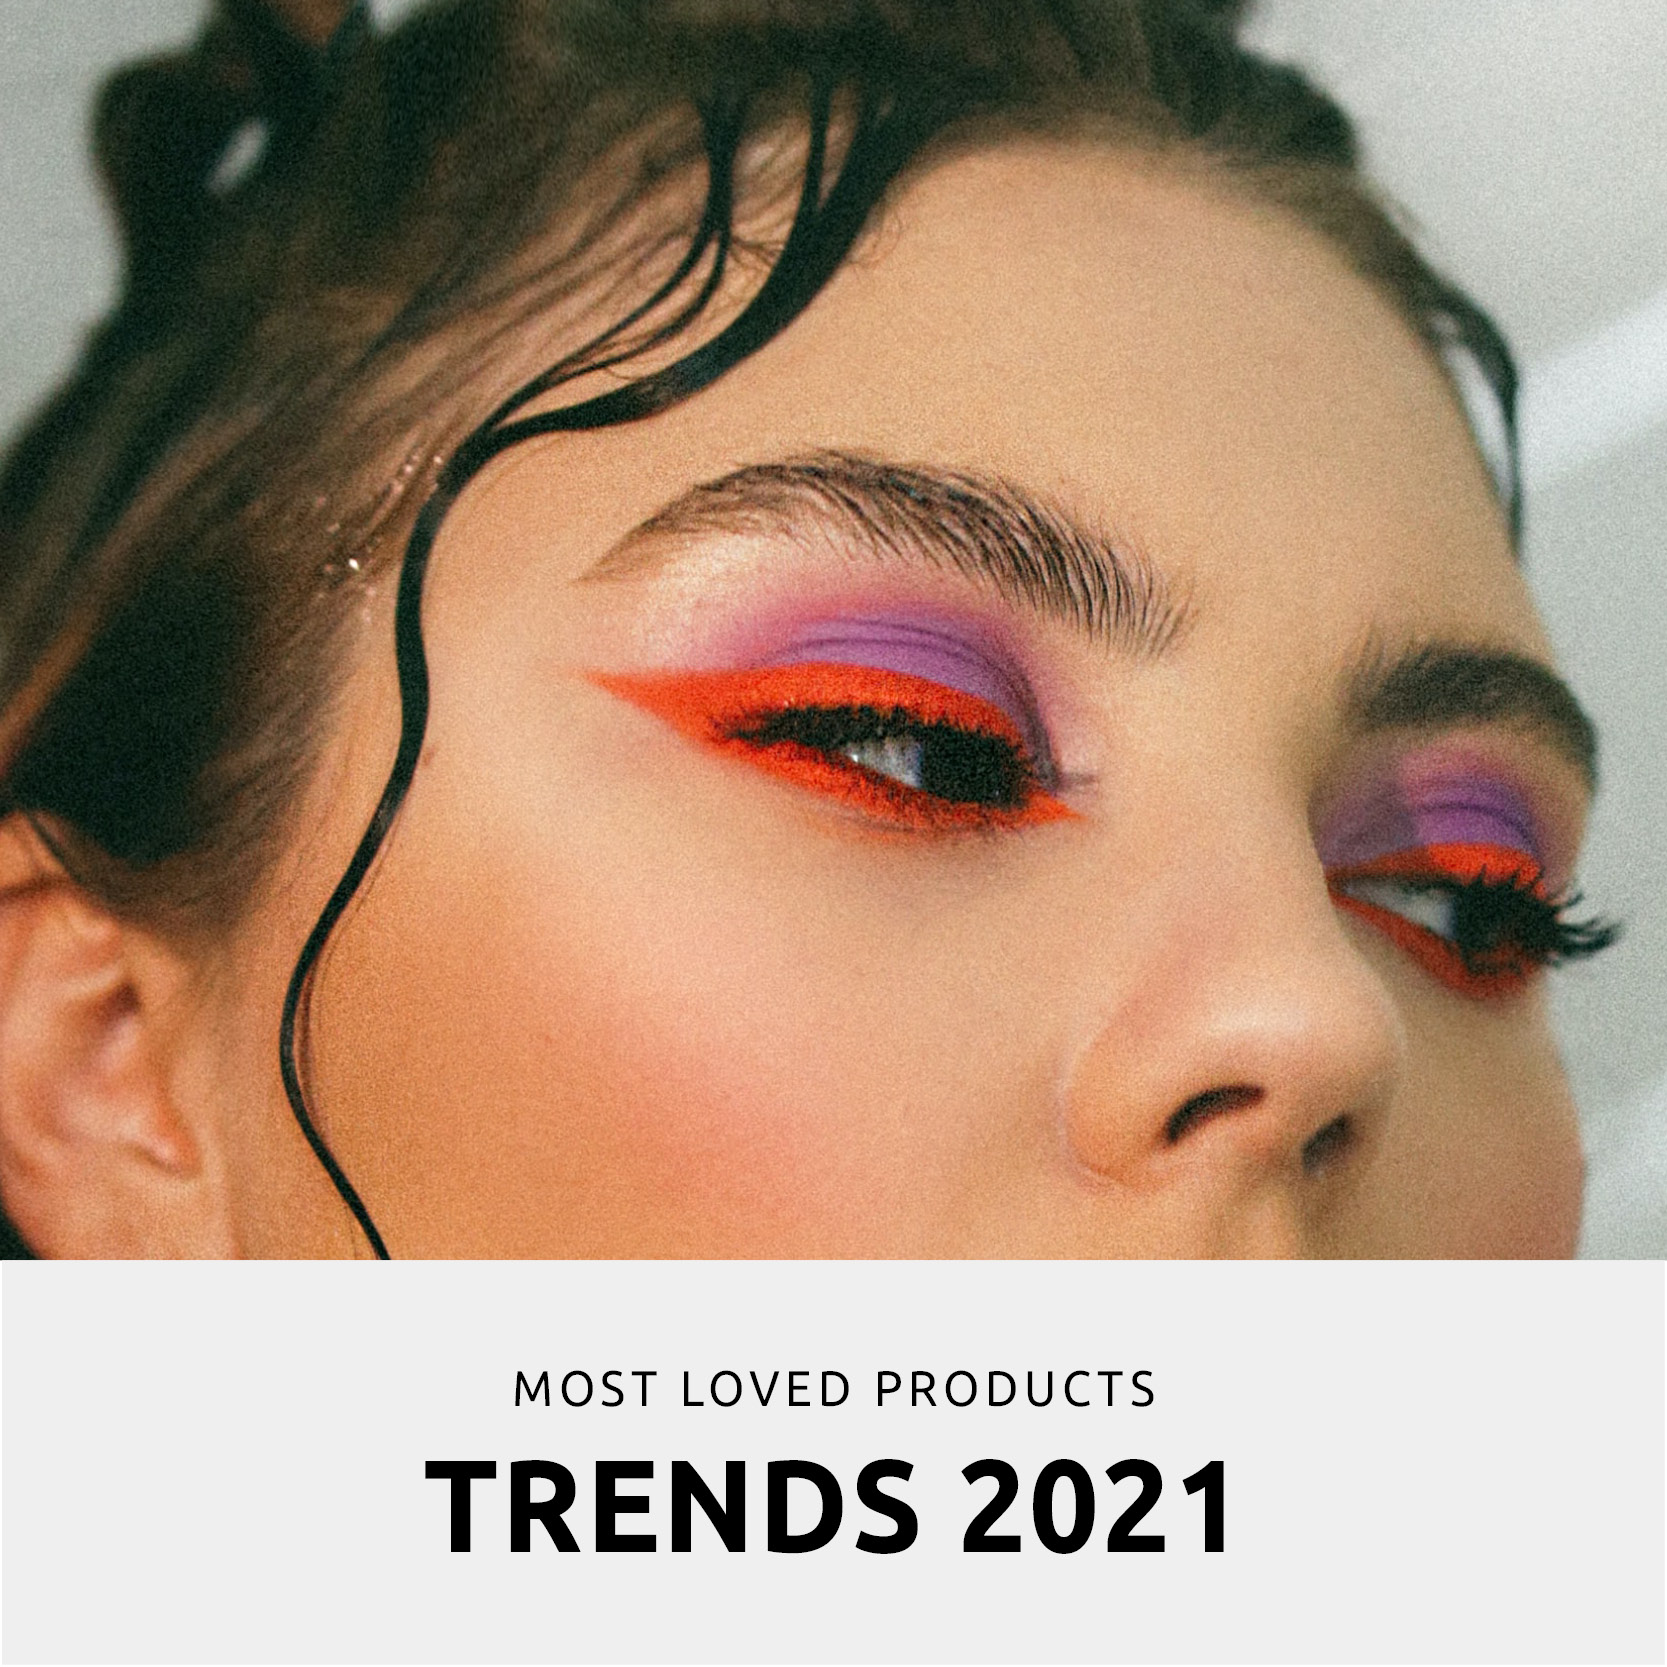 Beauty Trends 2021